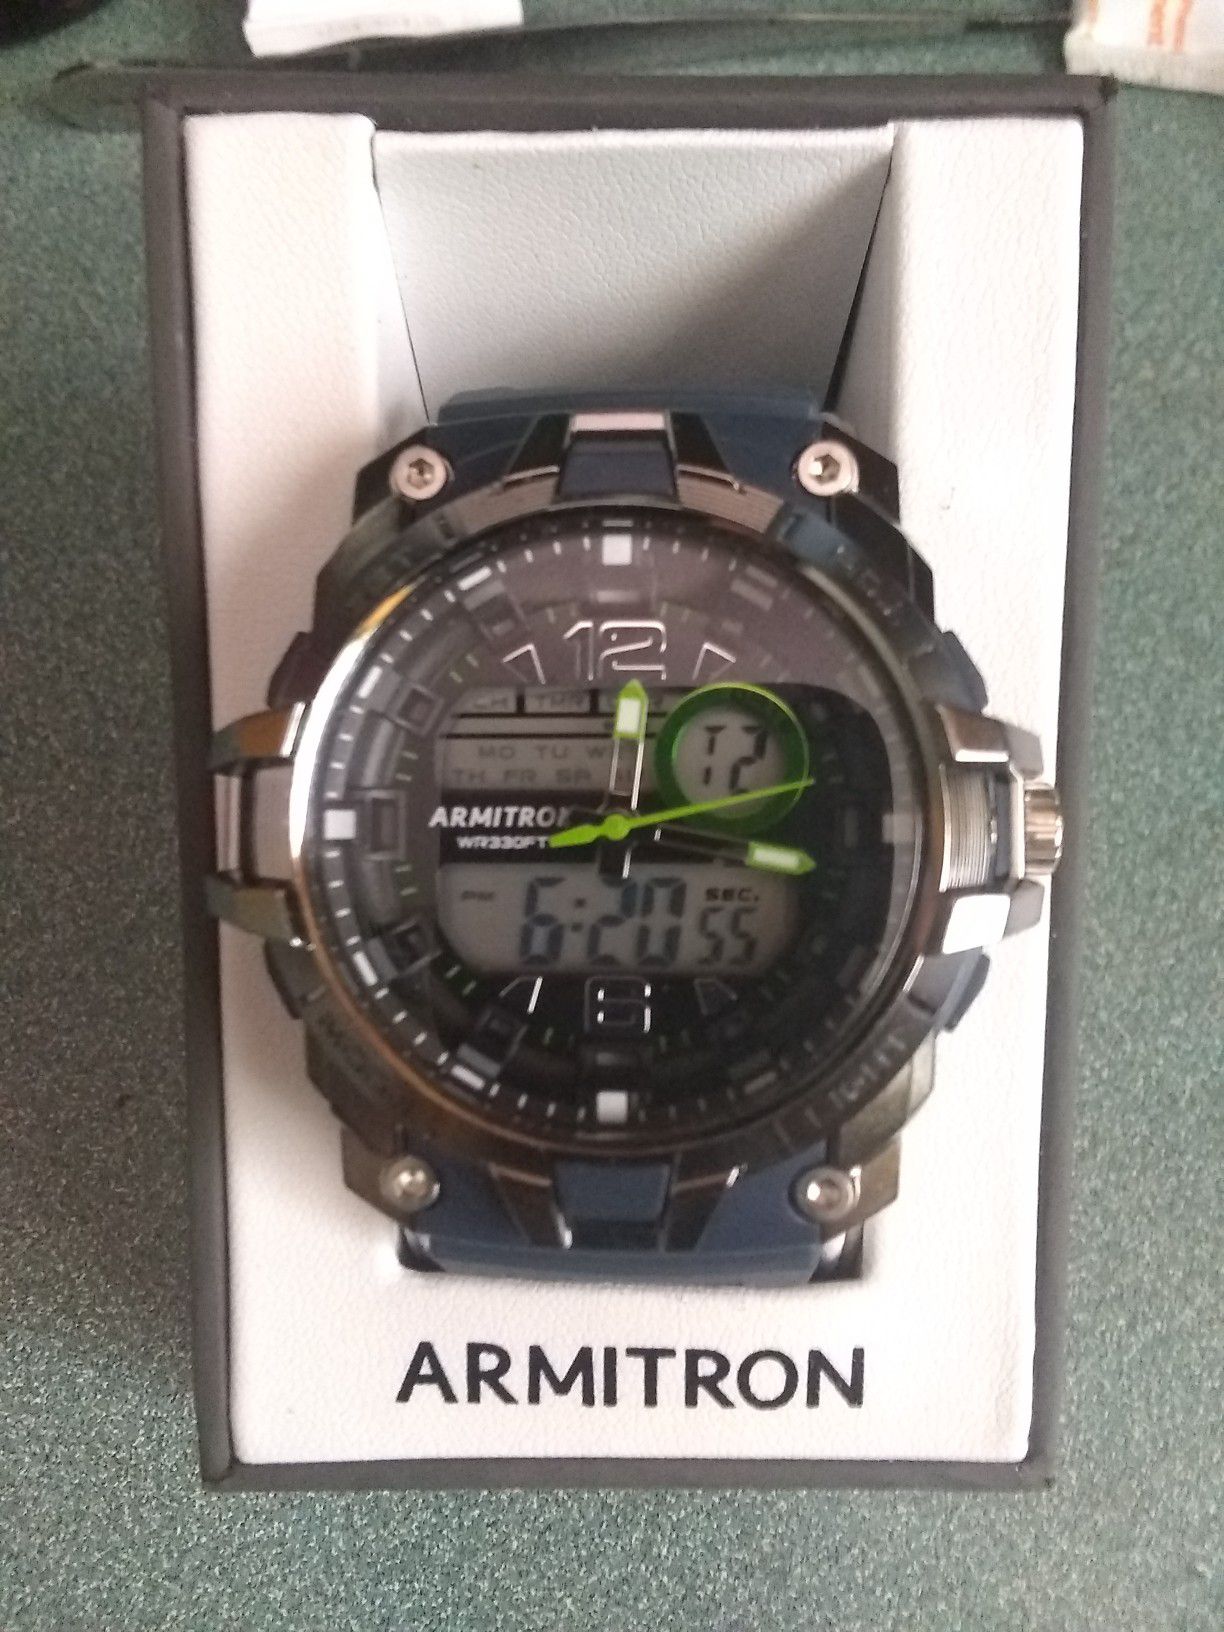 Brand New armitron watch